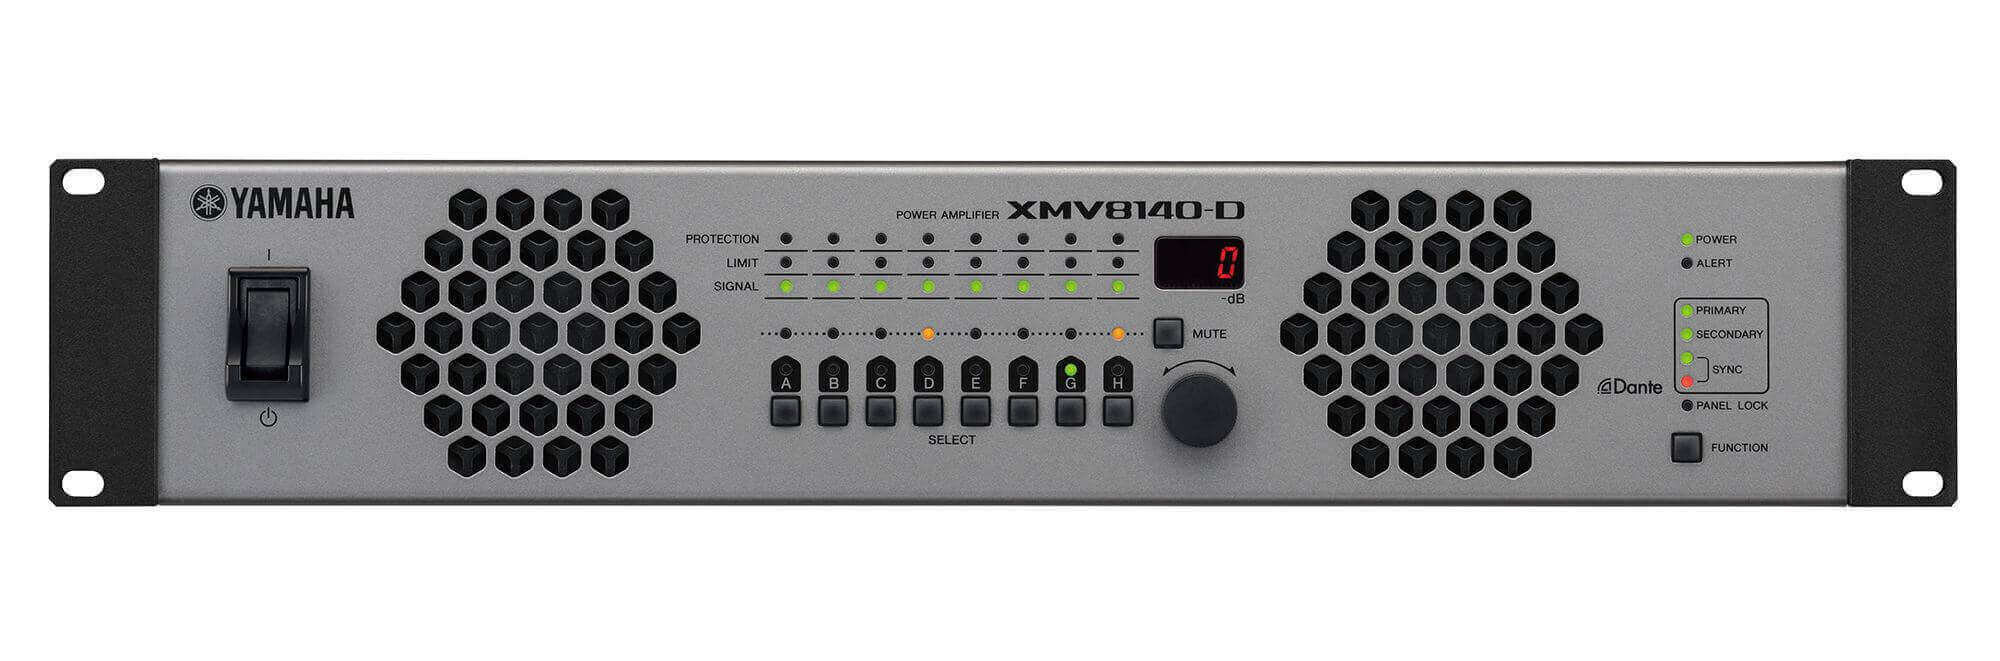 Yamaha Xmv8140-d Amplificador De 8 Canales.